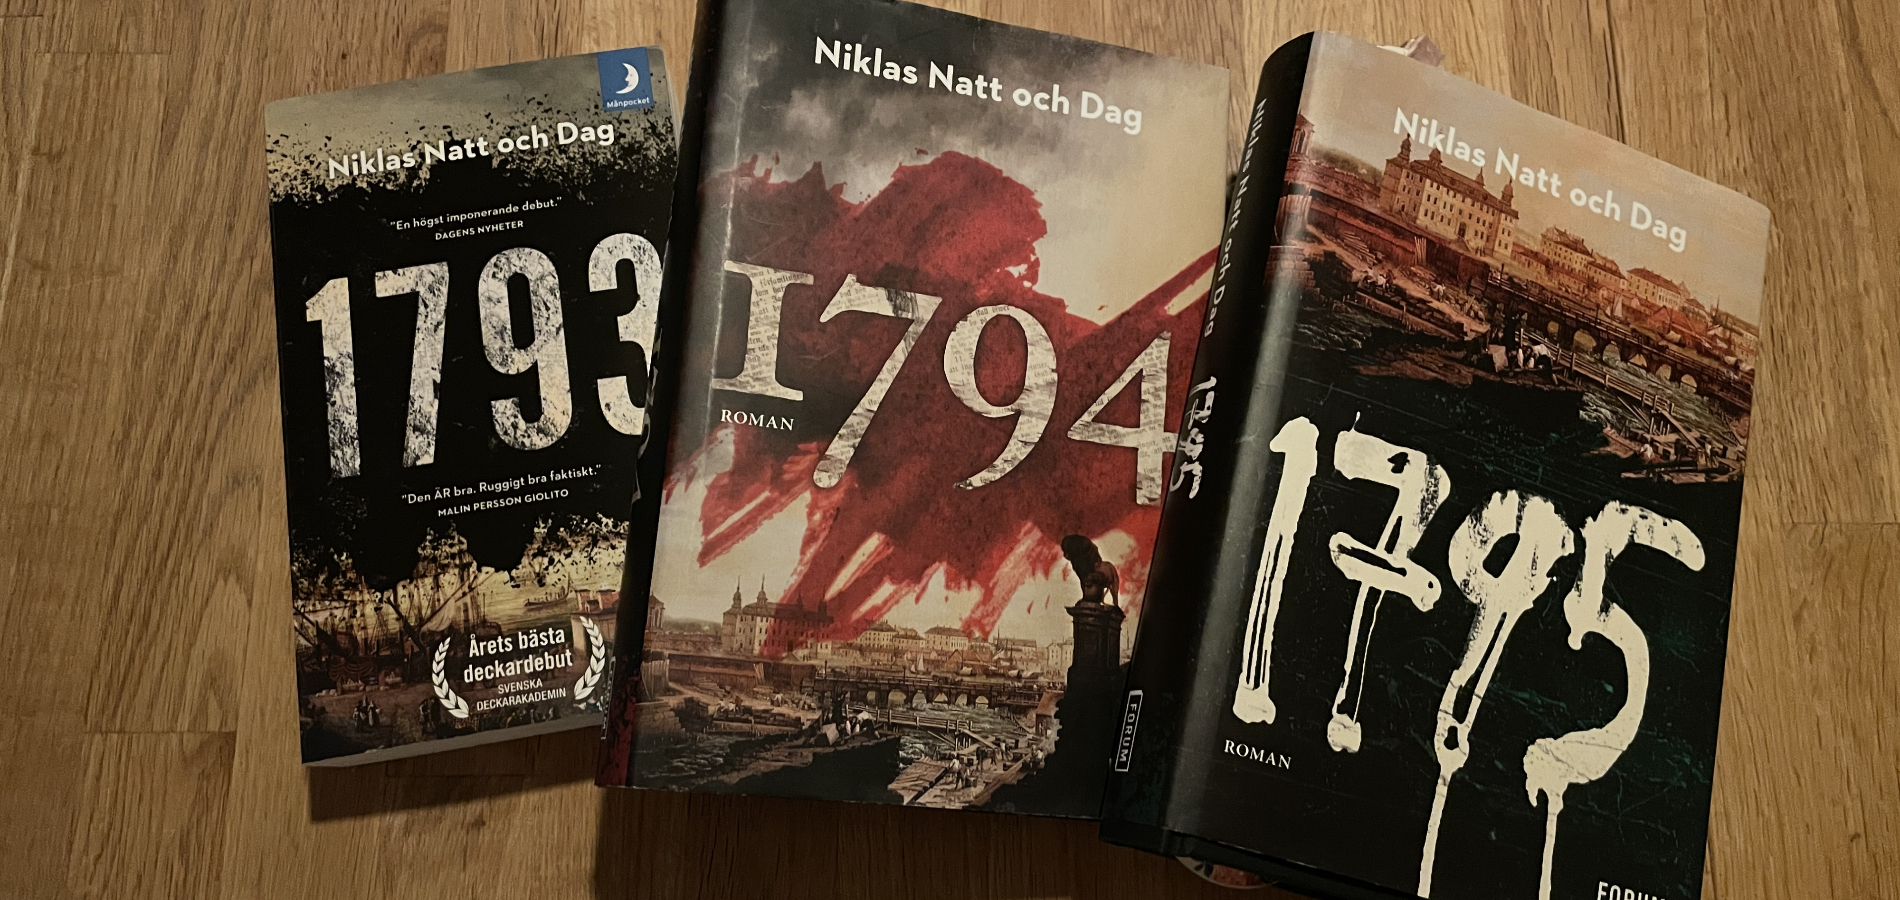 Bellman noir-trilogin av Niklas Natt och Dag utgörs av böckerna 1793, 1794 och 1795